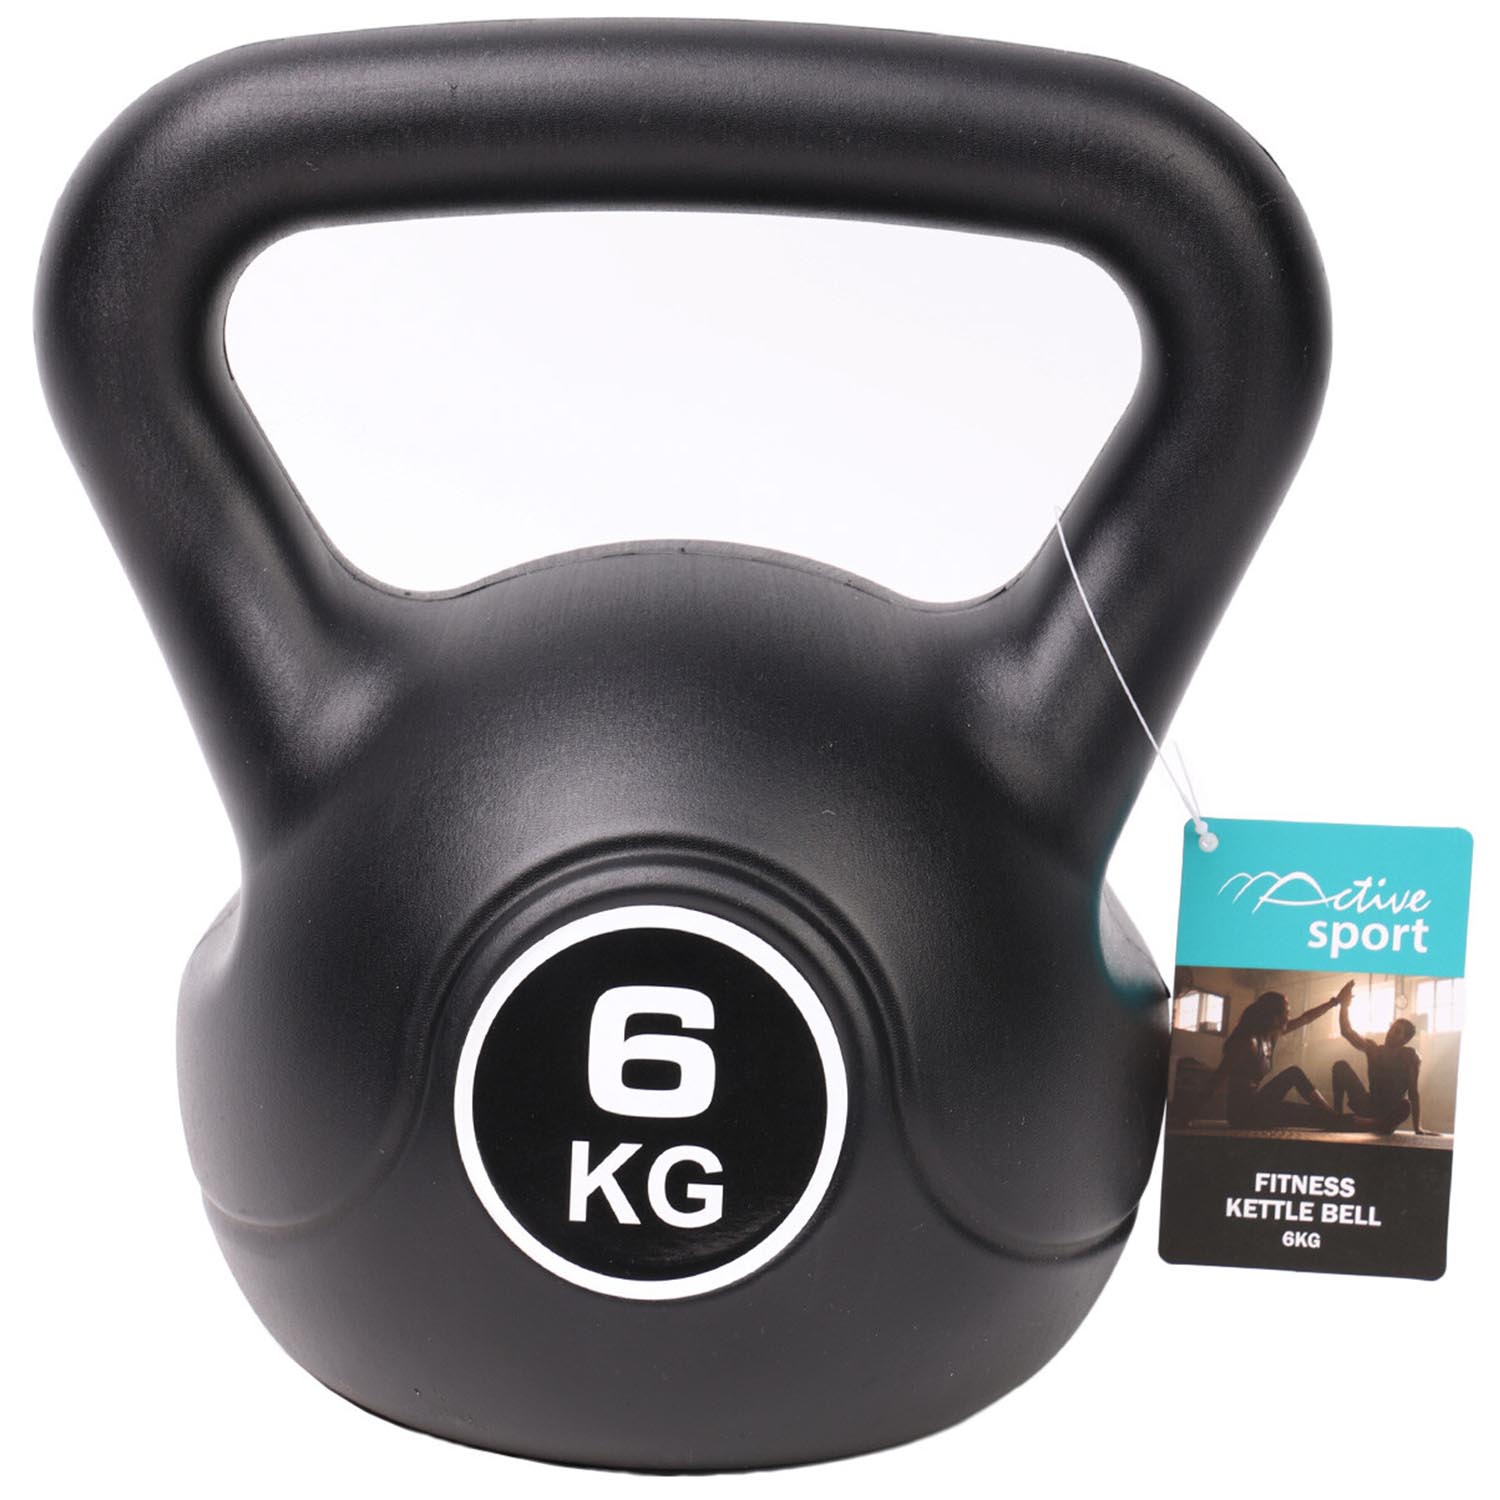 Active Sport Fitness KettleBell - Black / 6kg Image